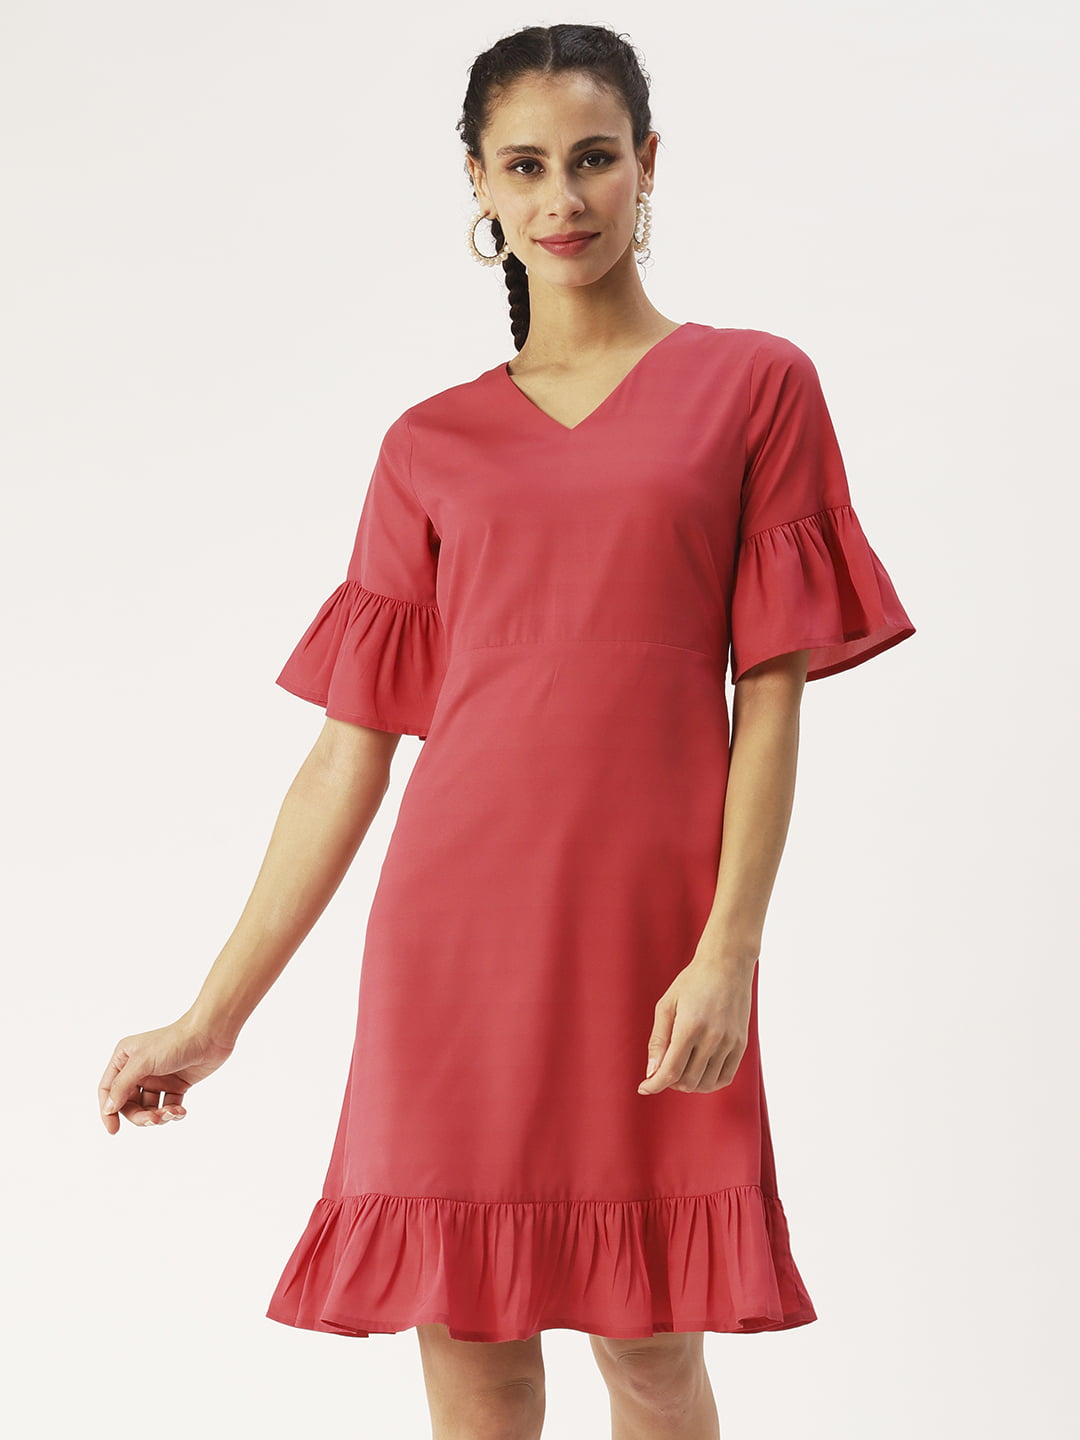 The Norah Nap Dress - Multi Berry Crepe